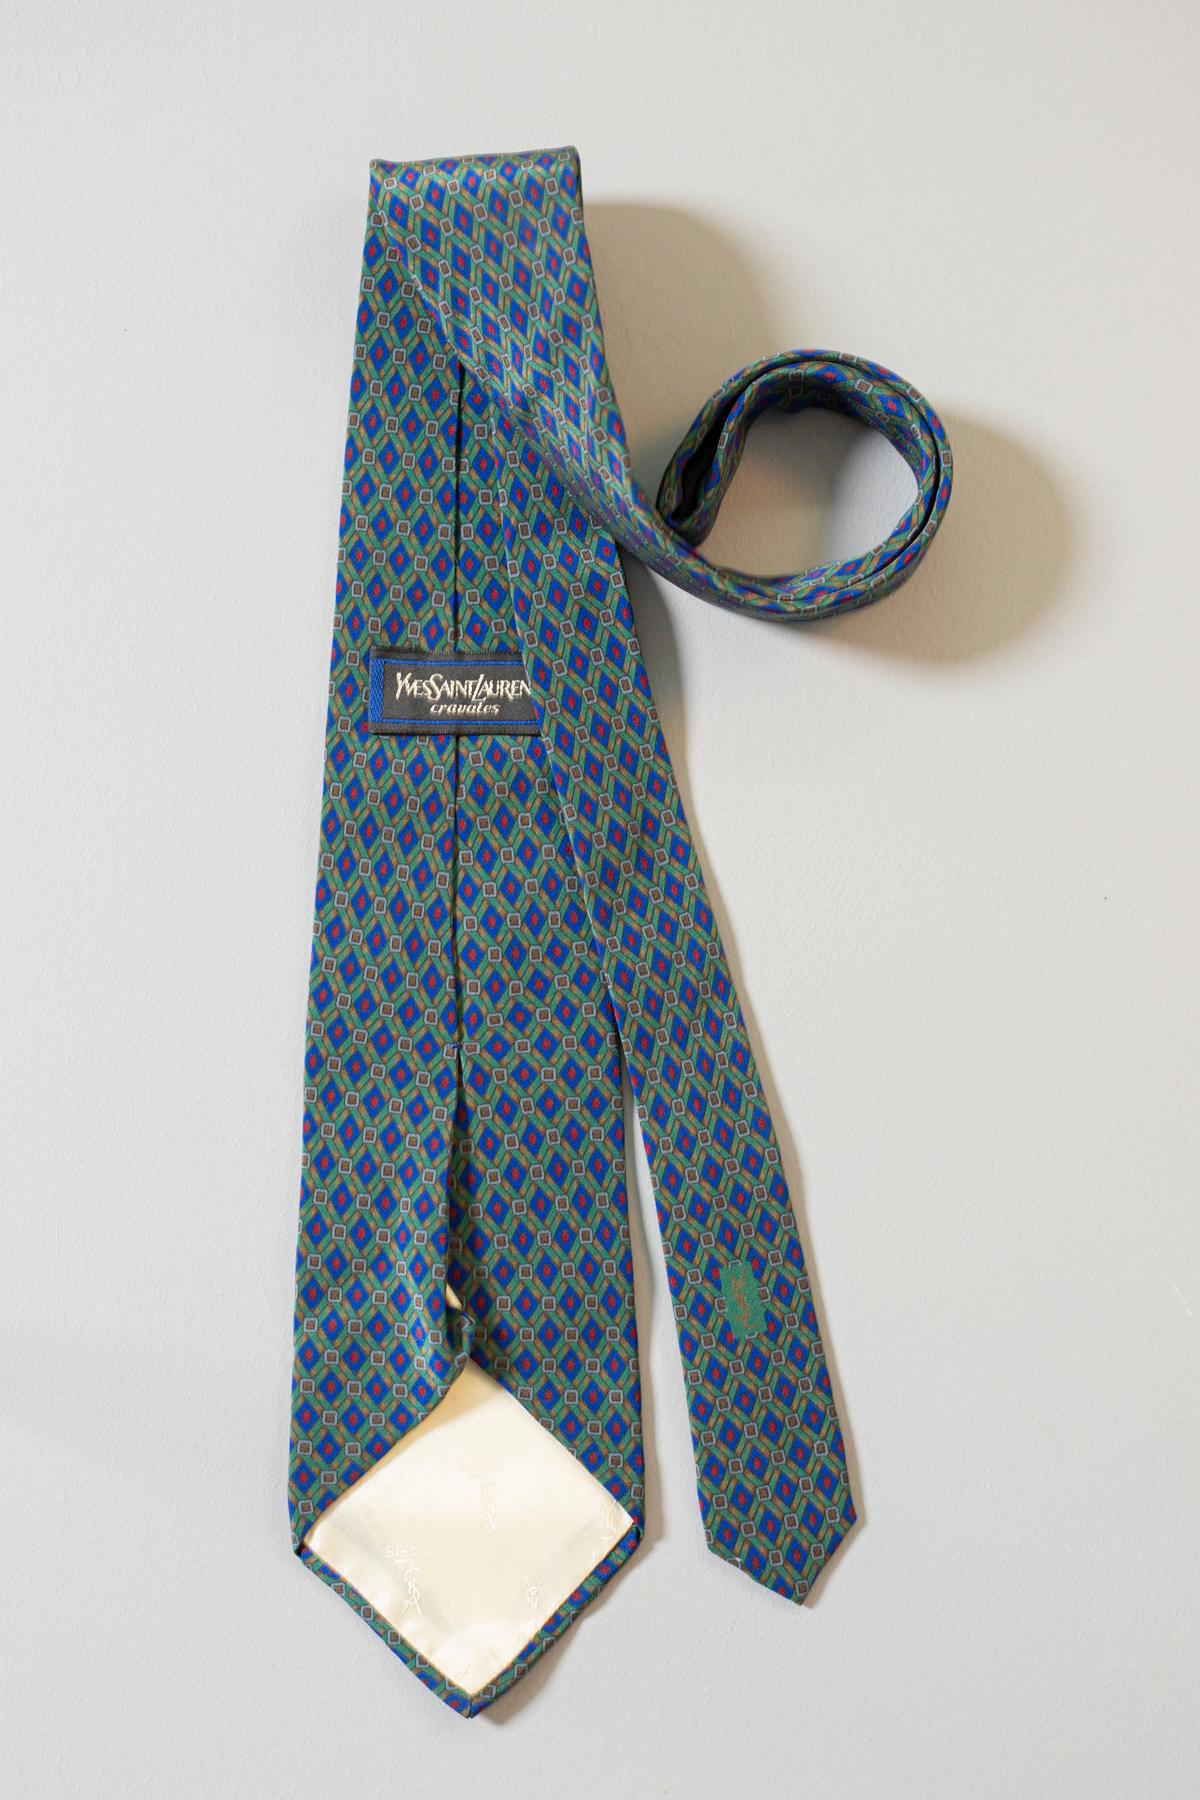 Fine et élégante, cette cravate vintage a été conçue par Yves Saint Laurent et elle est en toute soie. Ses motifs verts, bleus et rouges font de cette cravate un objet classe et élégant. Cette cravate est parfaite pour toutes les situations, du